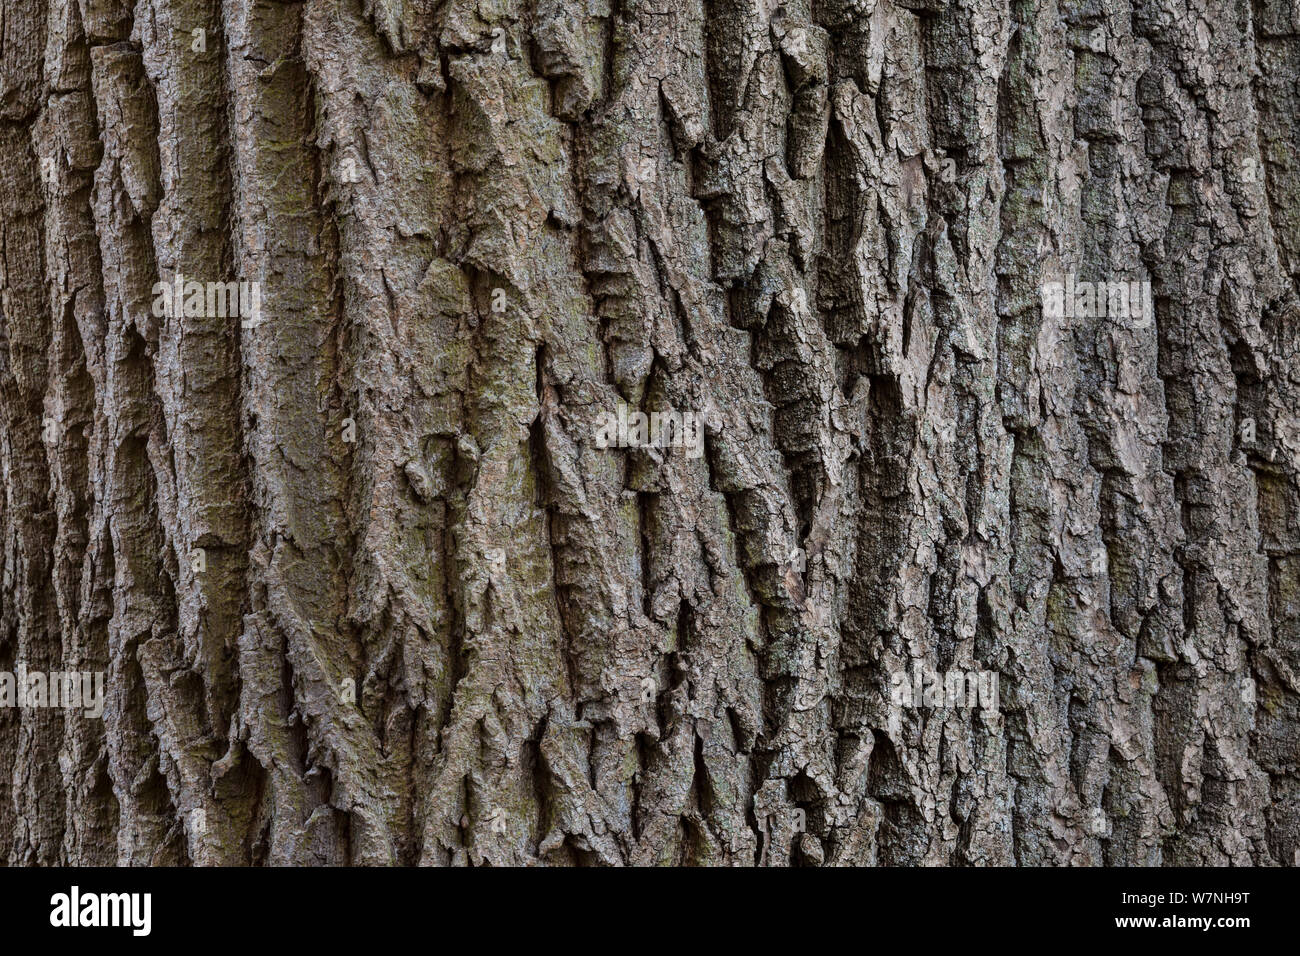 Ash tree bark (Fraxinus excelsior) close up detail, Peak District National Park, Derbyshire, UK, November Stock Photo